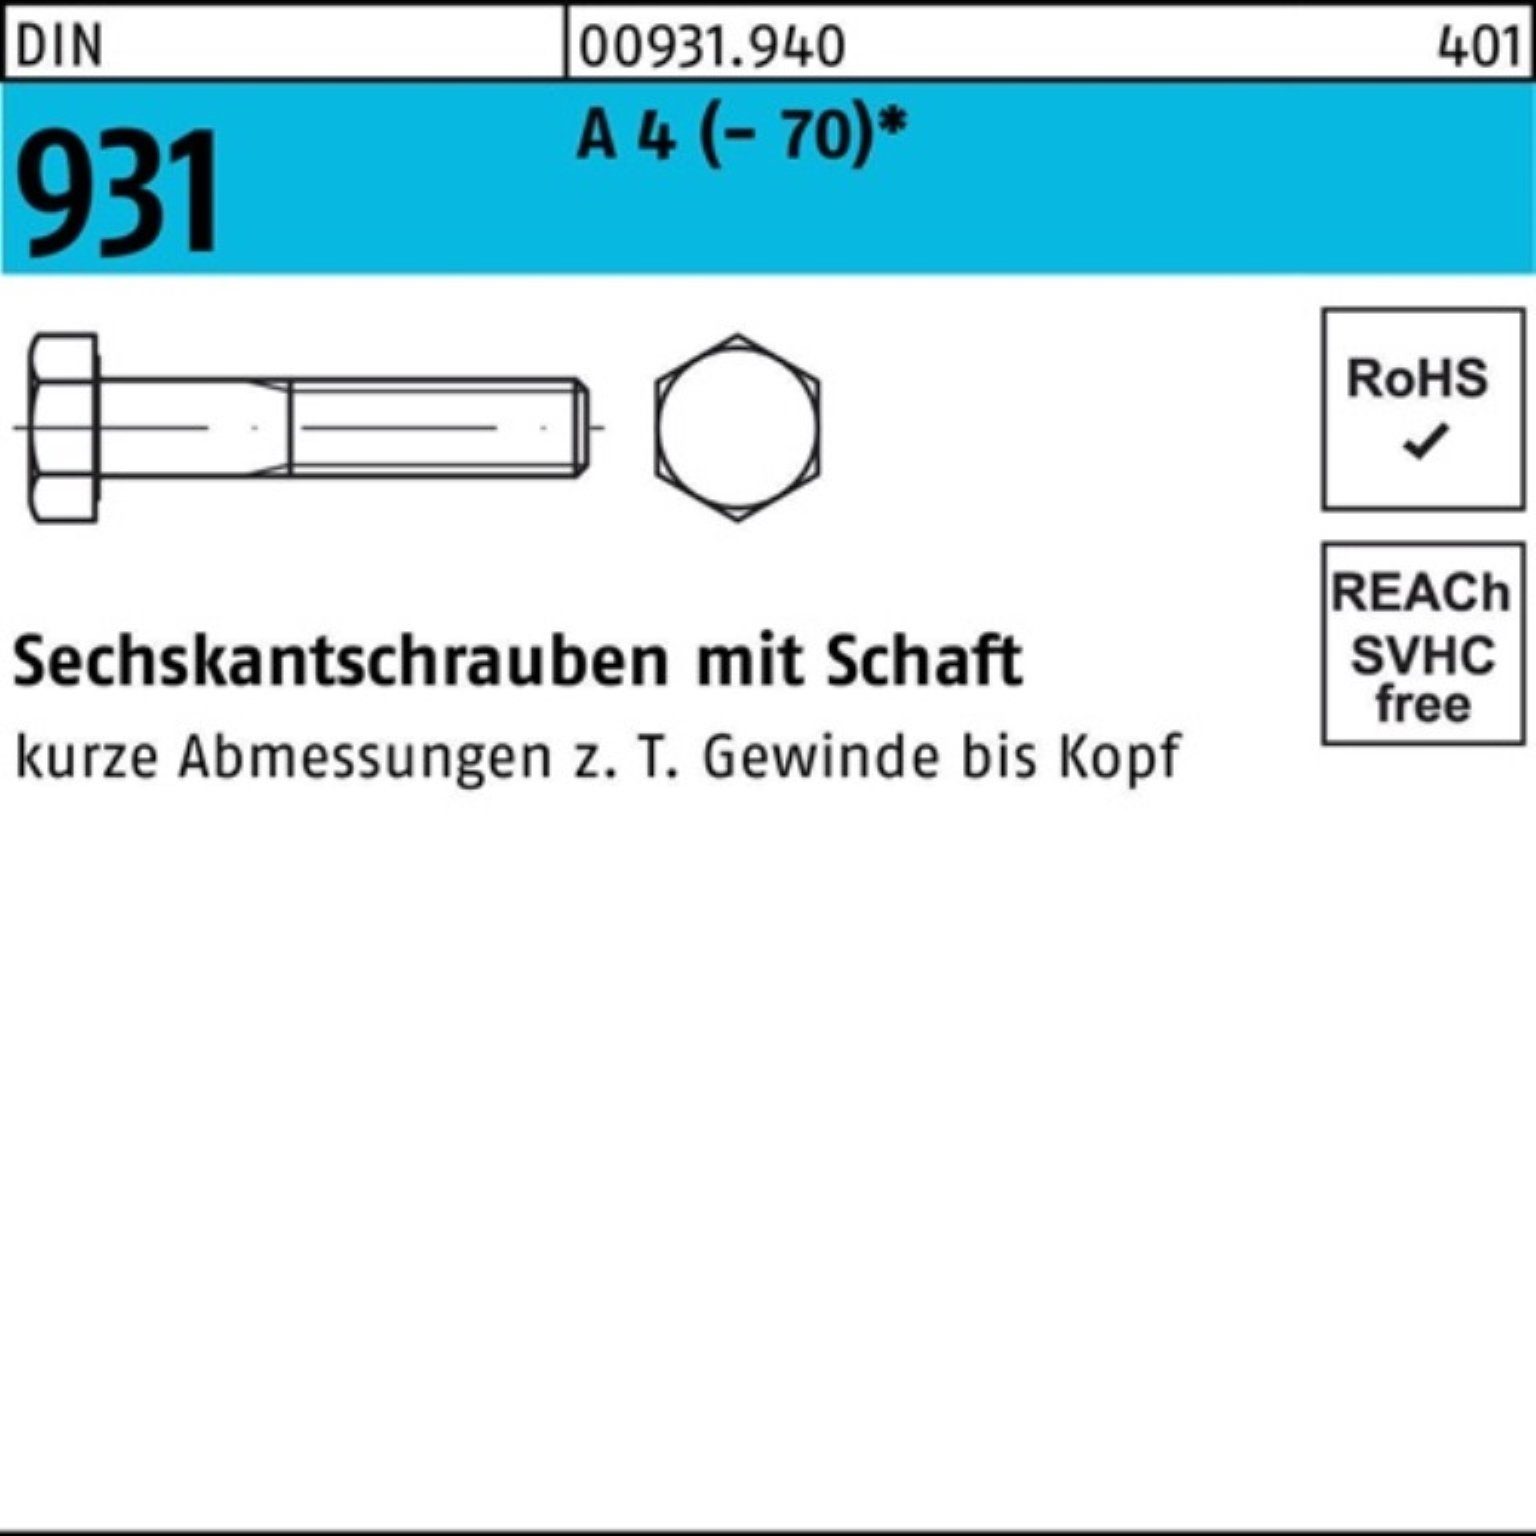 Reyher Sechskantschraube 100er DIN M14x 4 Schaft Sechskantschraube Pack 50 Stü 931 A 50 (70)